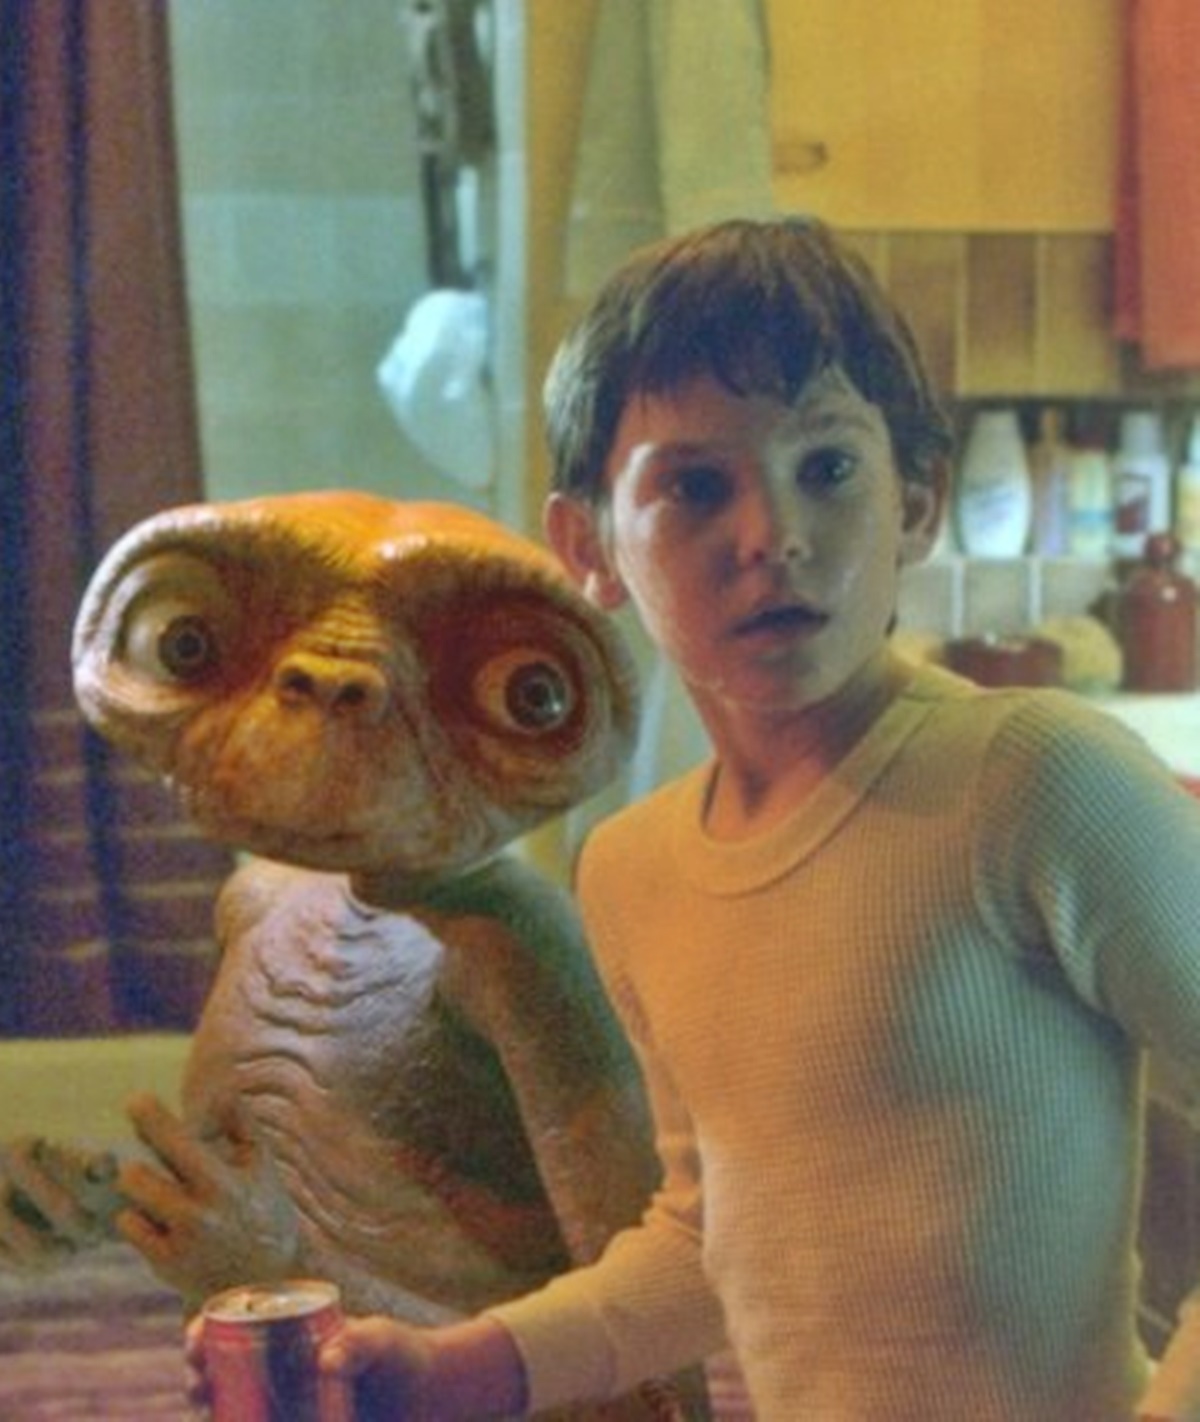 Így néz ki az E.T. – A földönkívüli édes kisfiúja 42 év eltelte után - Henry Thomas